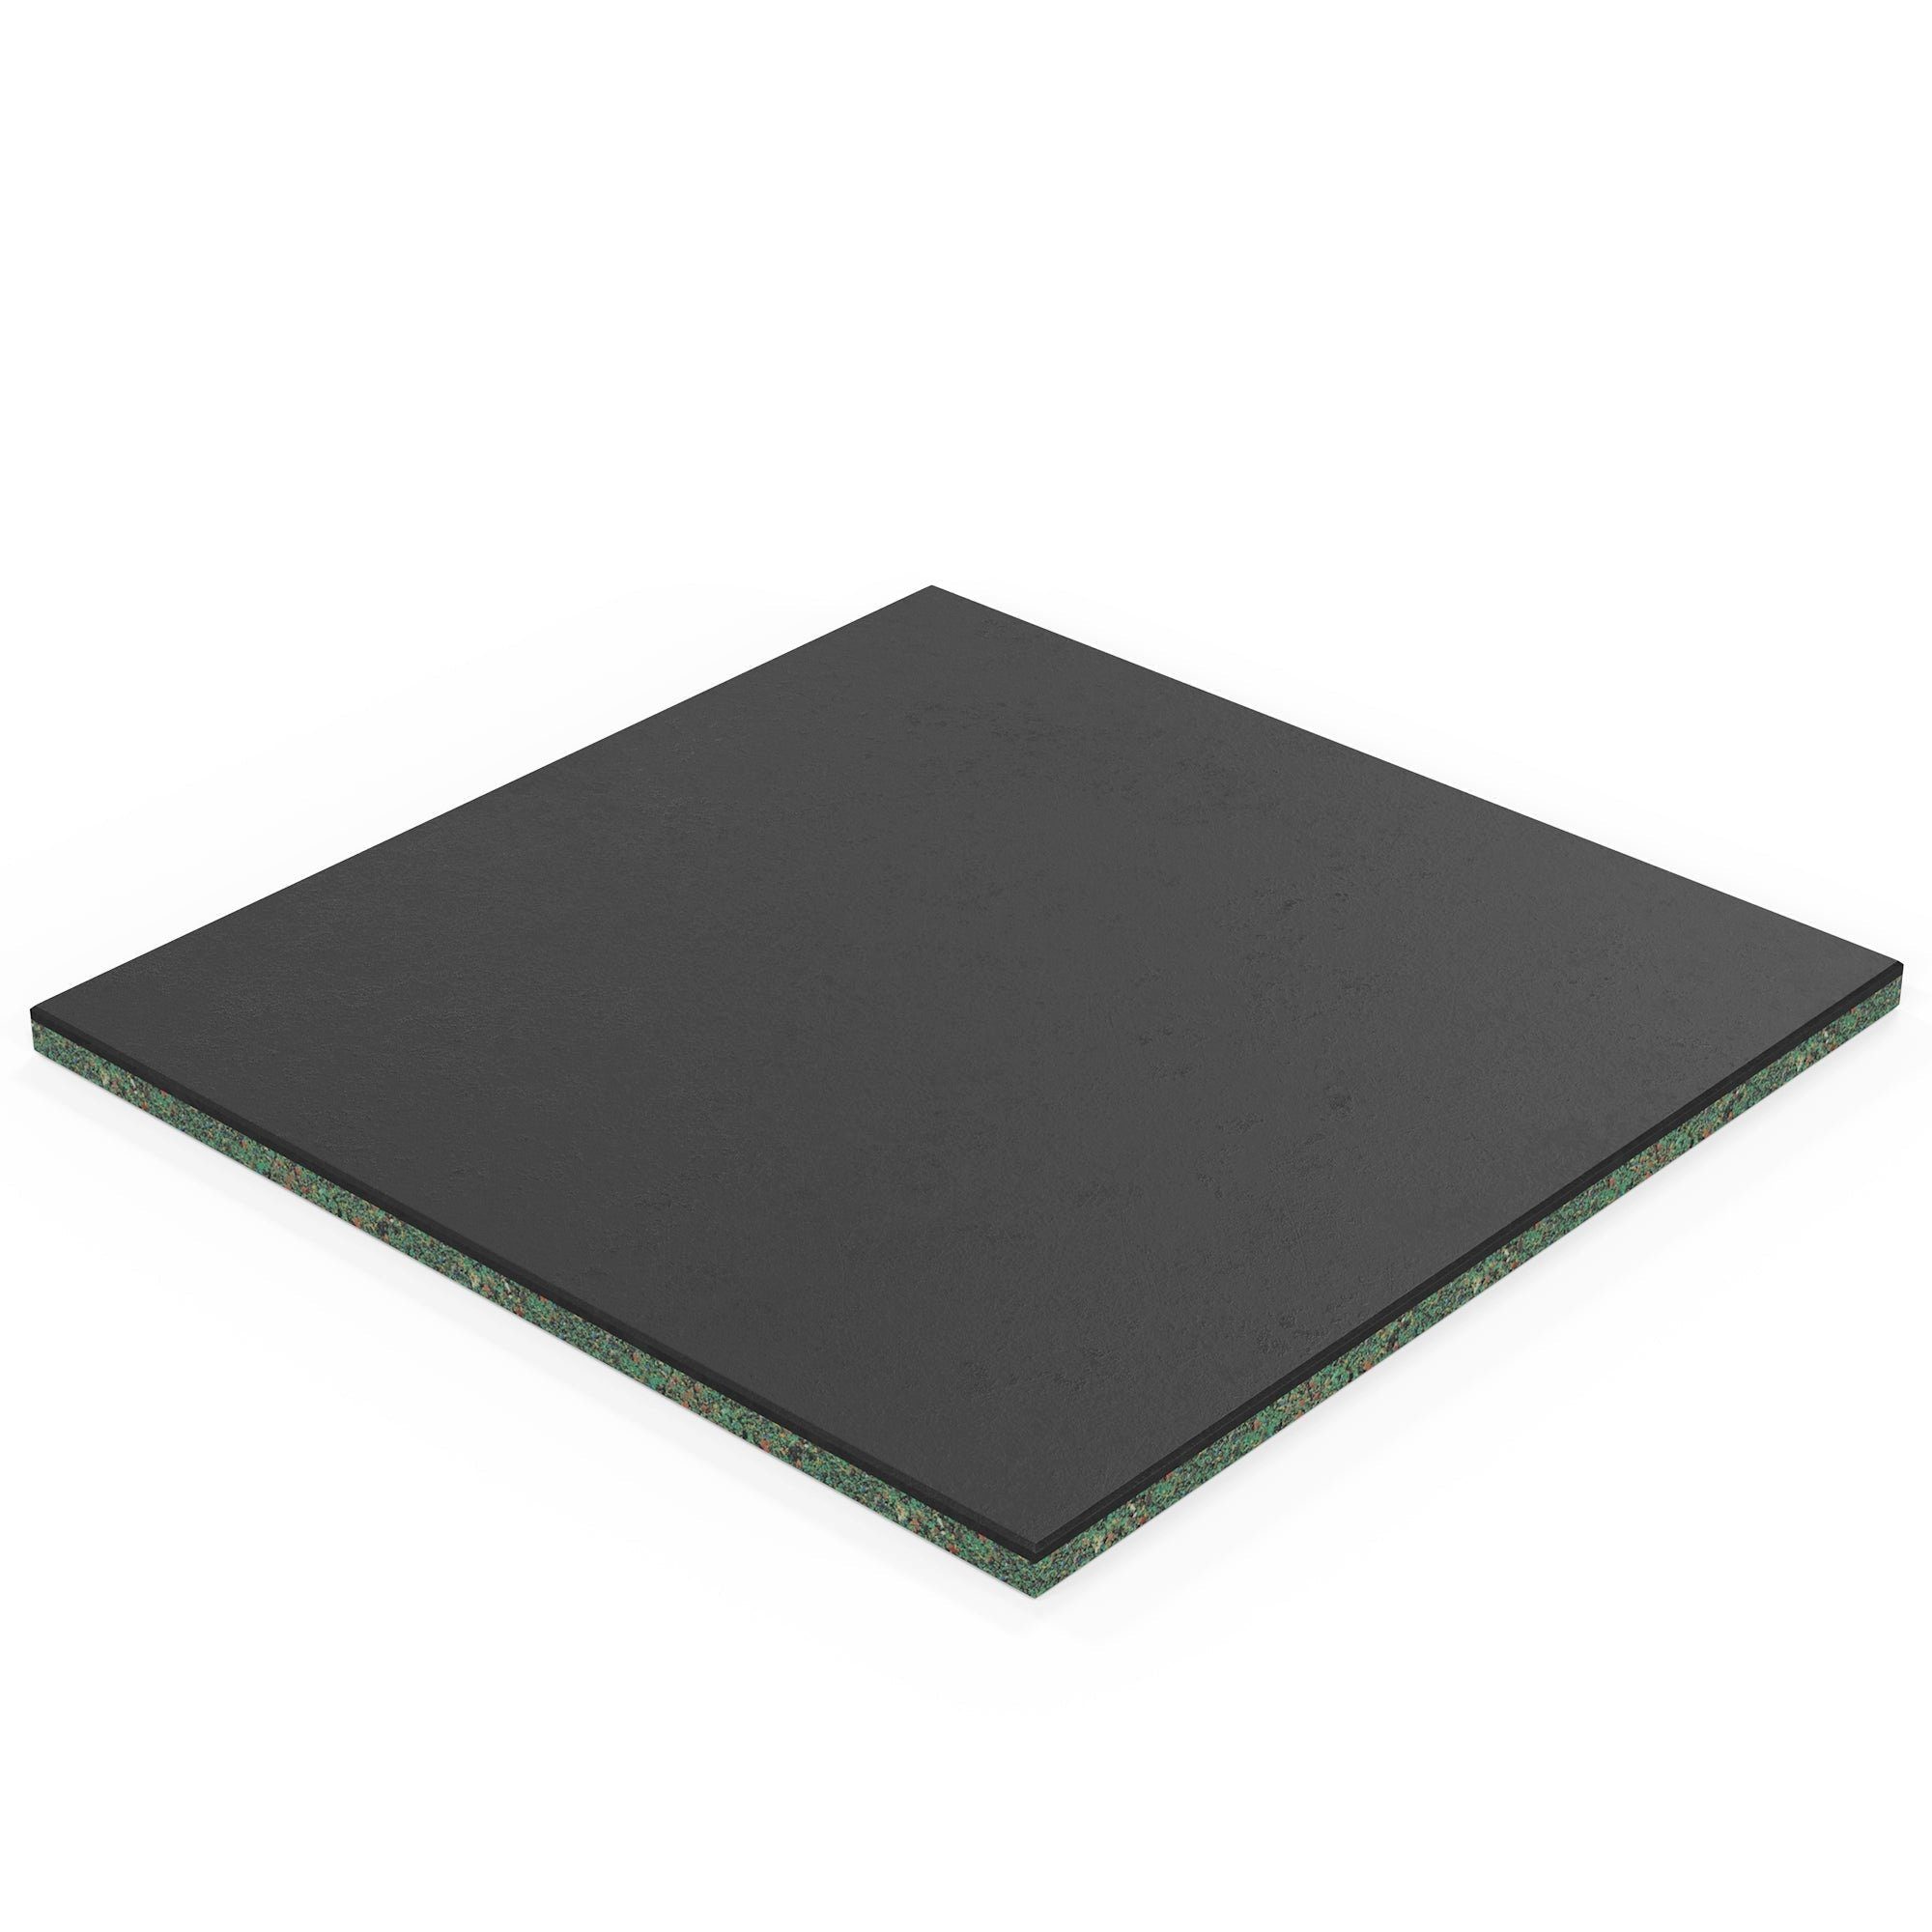 ATLETICA Bodenmatte, 20m2 SolidProtect Bodenschutzmatten 20 mm, Material Keltan EPDM